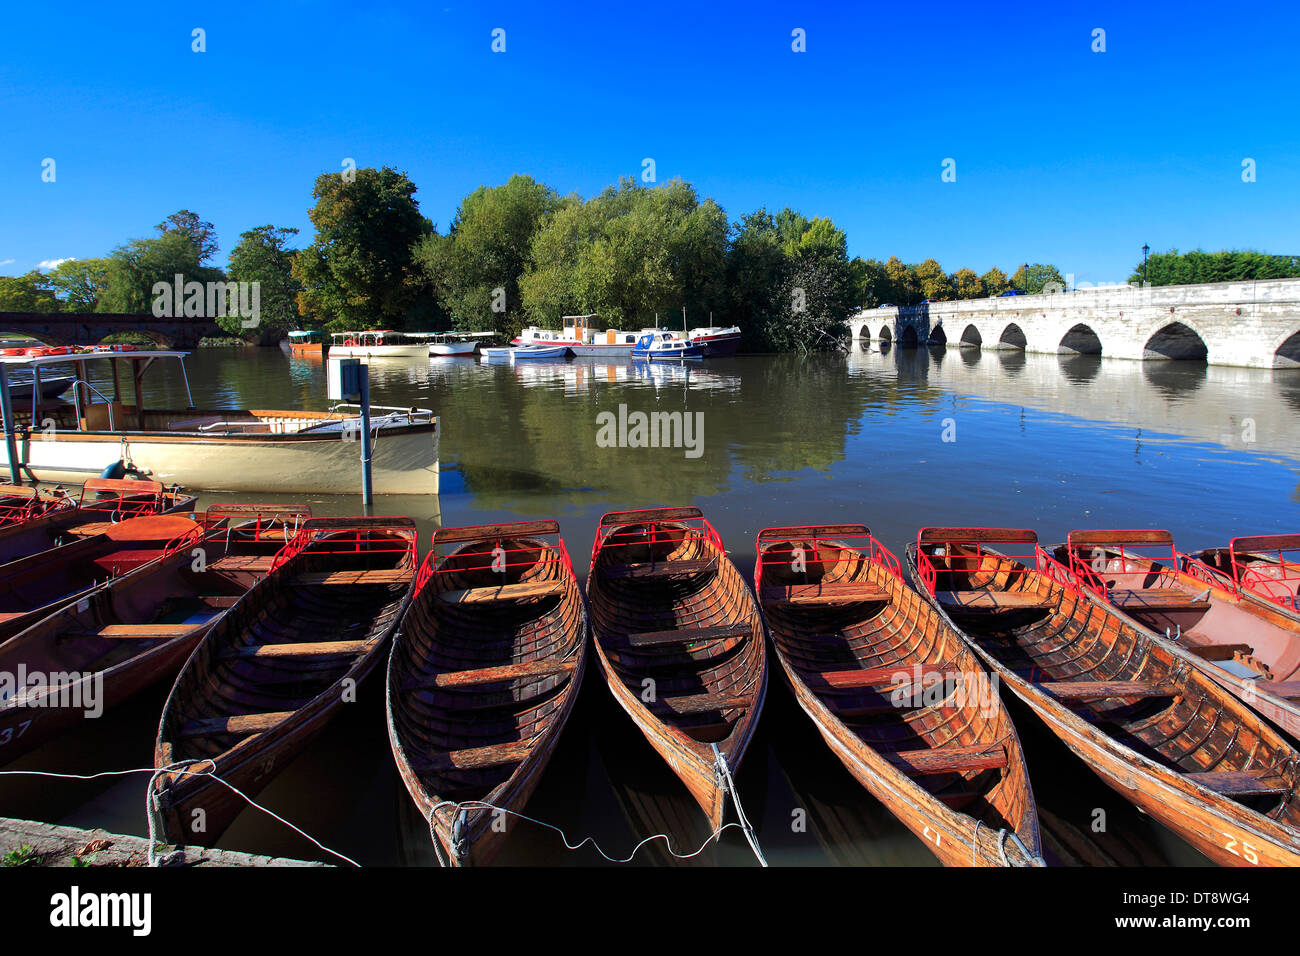 Une ligne de l'aviron bateaux à louer mouillée par la rivière Avon, Stratford-upon-Avon, Warwickshire, Angleterre ville ; Grande-Bretagne ; UK Banque D'Images